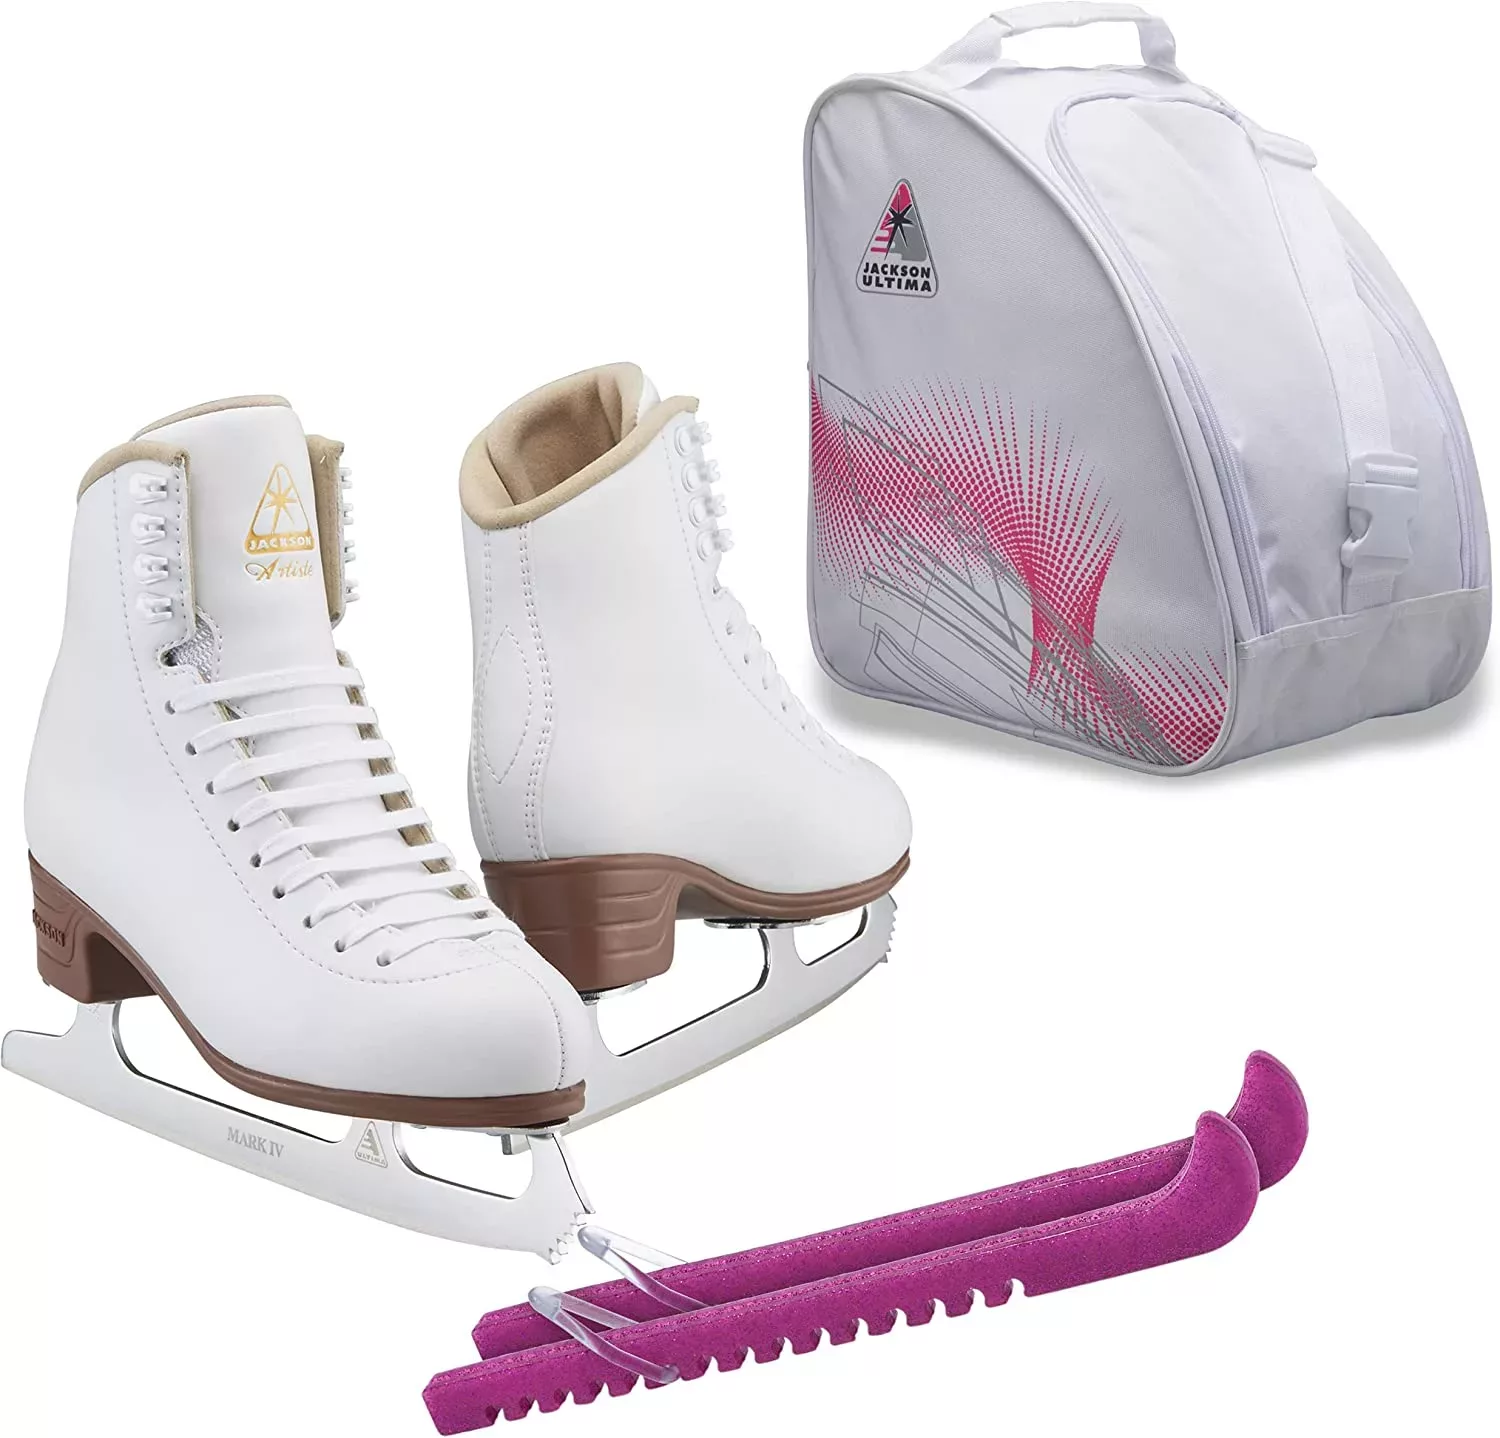 SKATE GURU Jackson Ultima Artiste JS1790 Eiskunstlauf-Paket mit Tasche und Skate-Schutz Bündelt Allzweckmesser